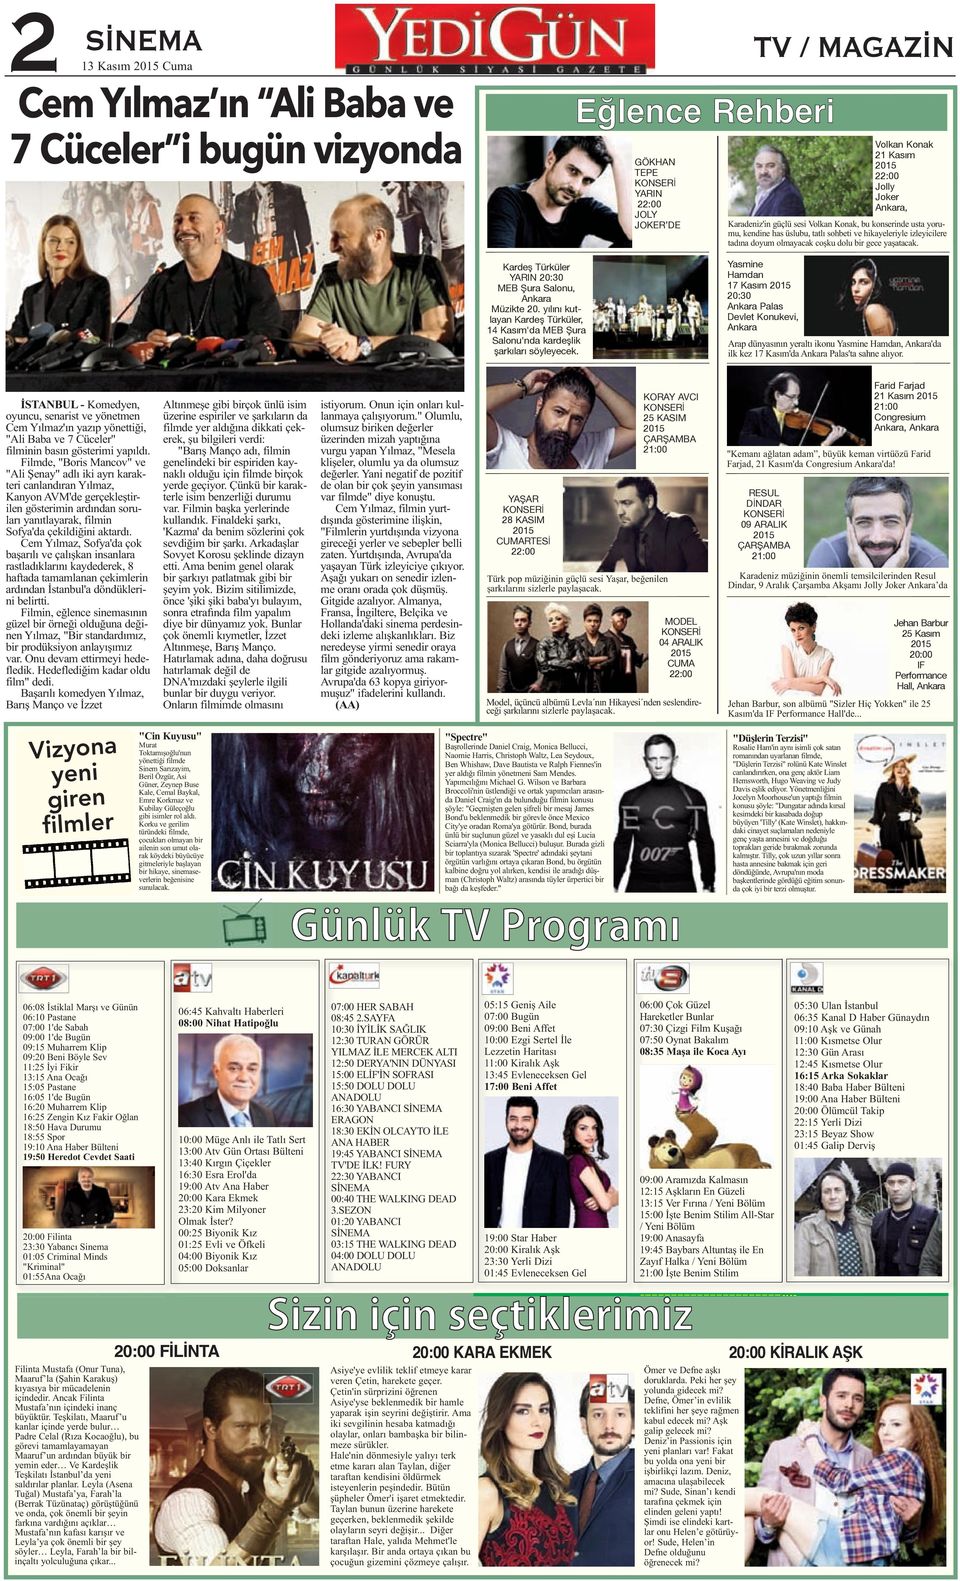 Kardeş Türküler YARIN 20:30 MEB Şura Salonu, Ankara Müzikte 20. yılını kutlayan Kardeş Türküler, 14 Kasım'da MEB Şura Salonu'nda kardeşlik şarkıları söyleyecek.